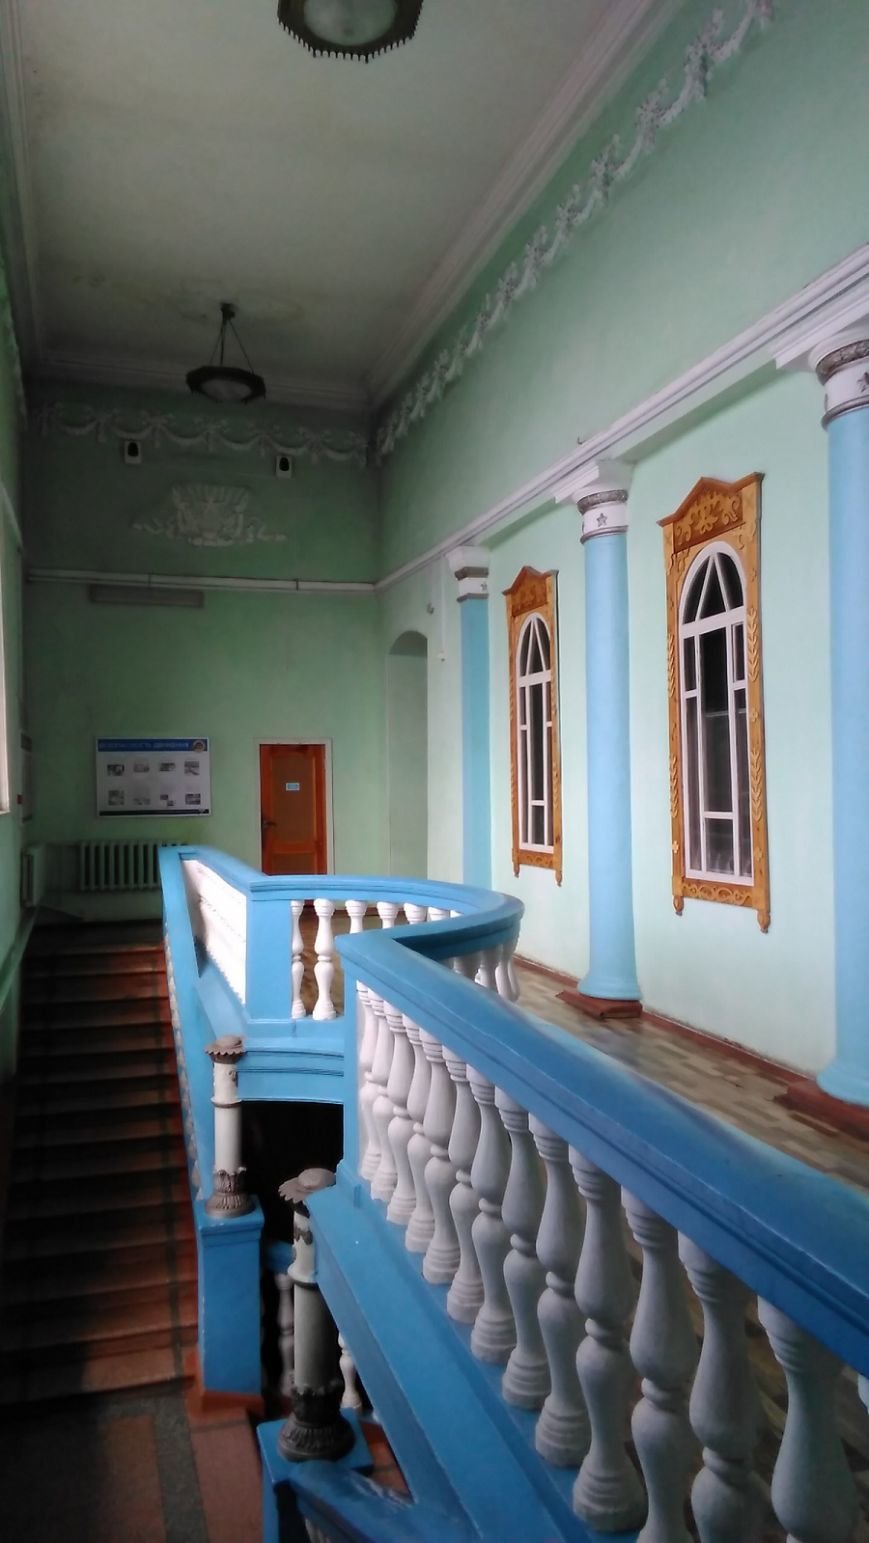 Старый вокзал в Ульяновске стал объектом культурного наследия. ФОТО, фото-2